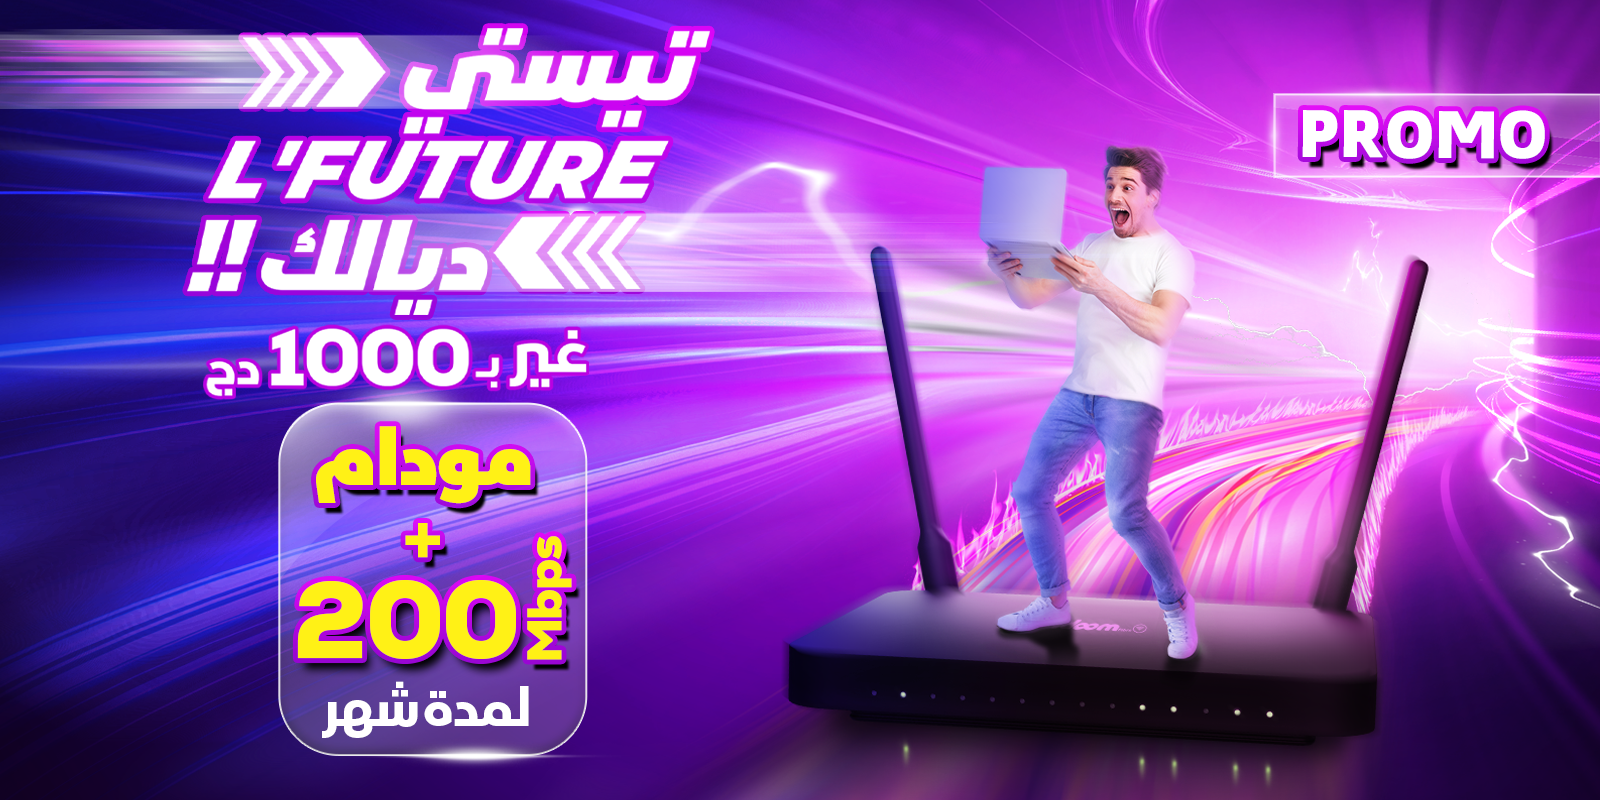 IDOOM Fibre Algeria Telecom's new promotion